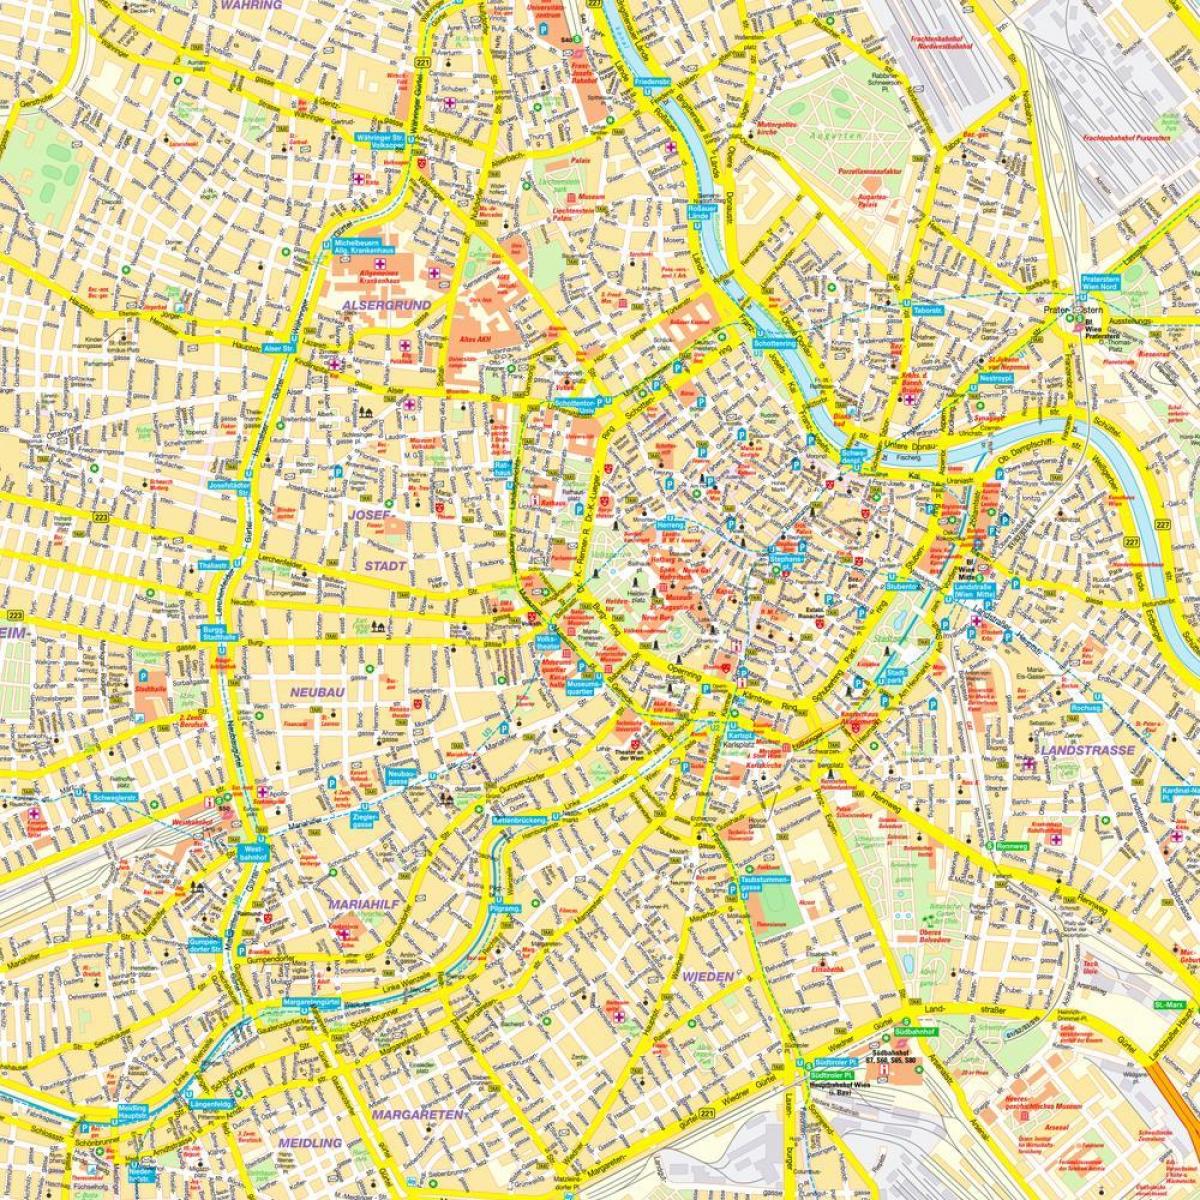 Wiedeń wewnętrzna mapa miasta